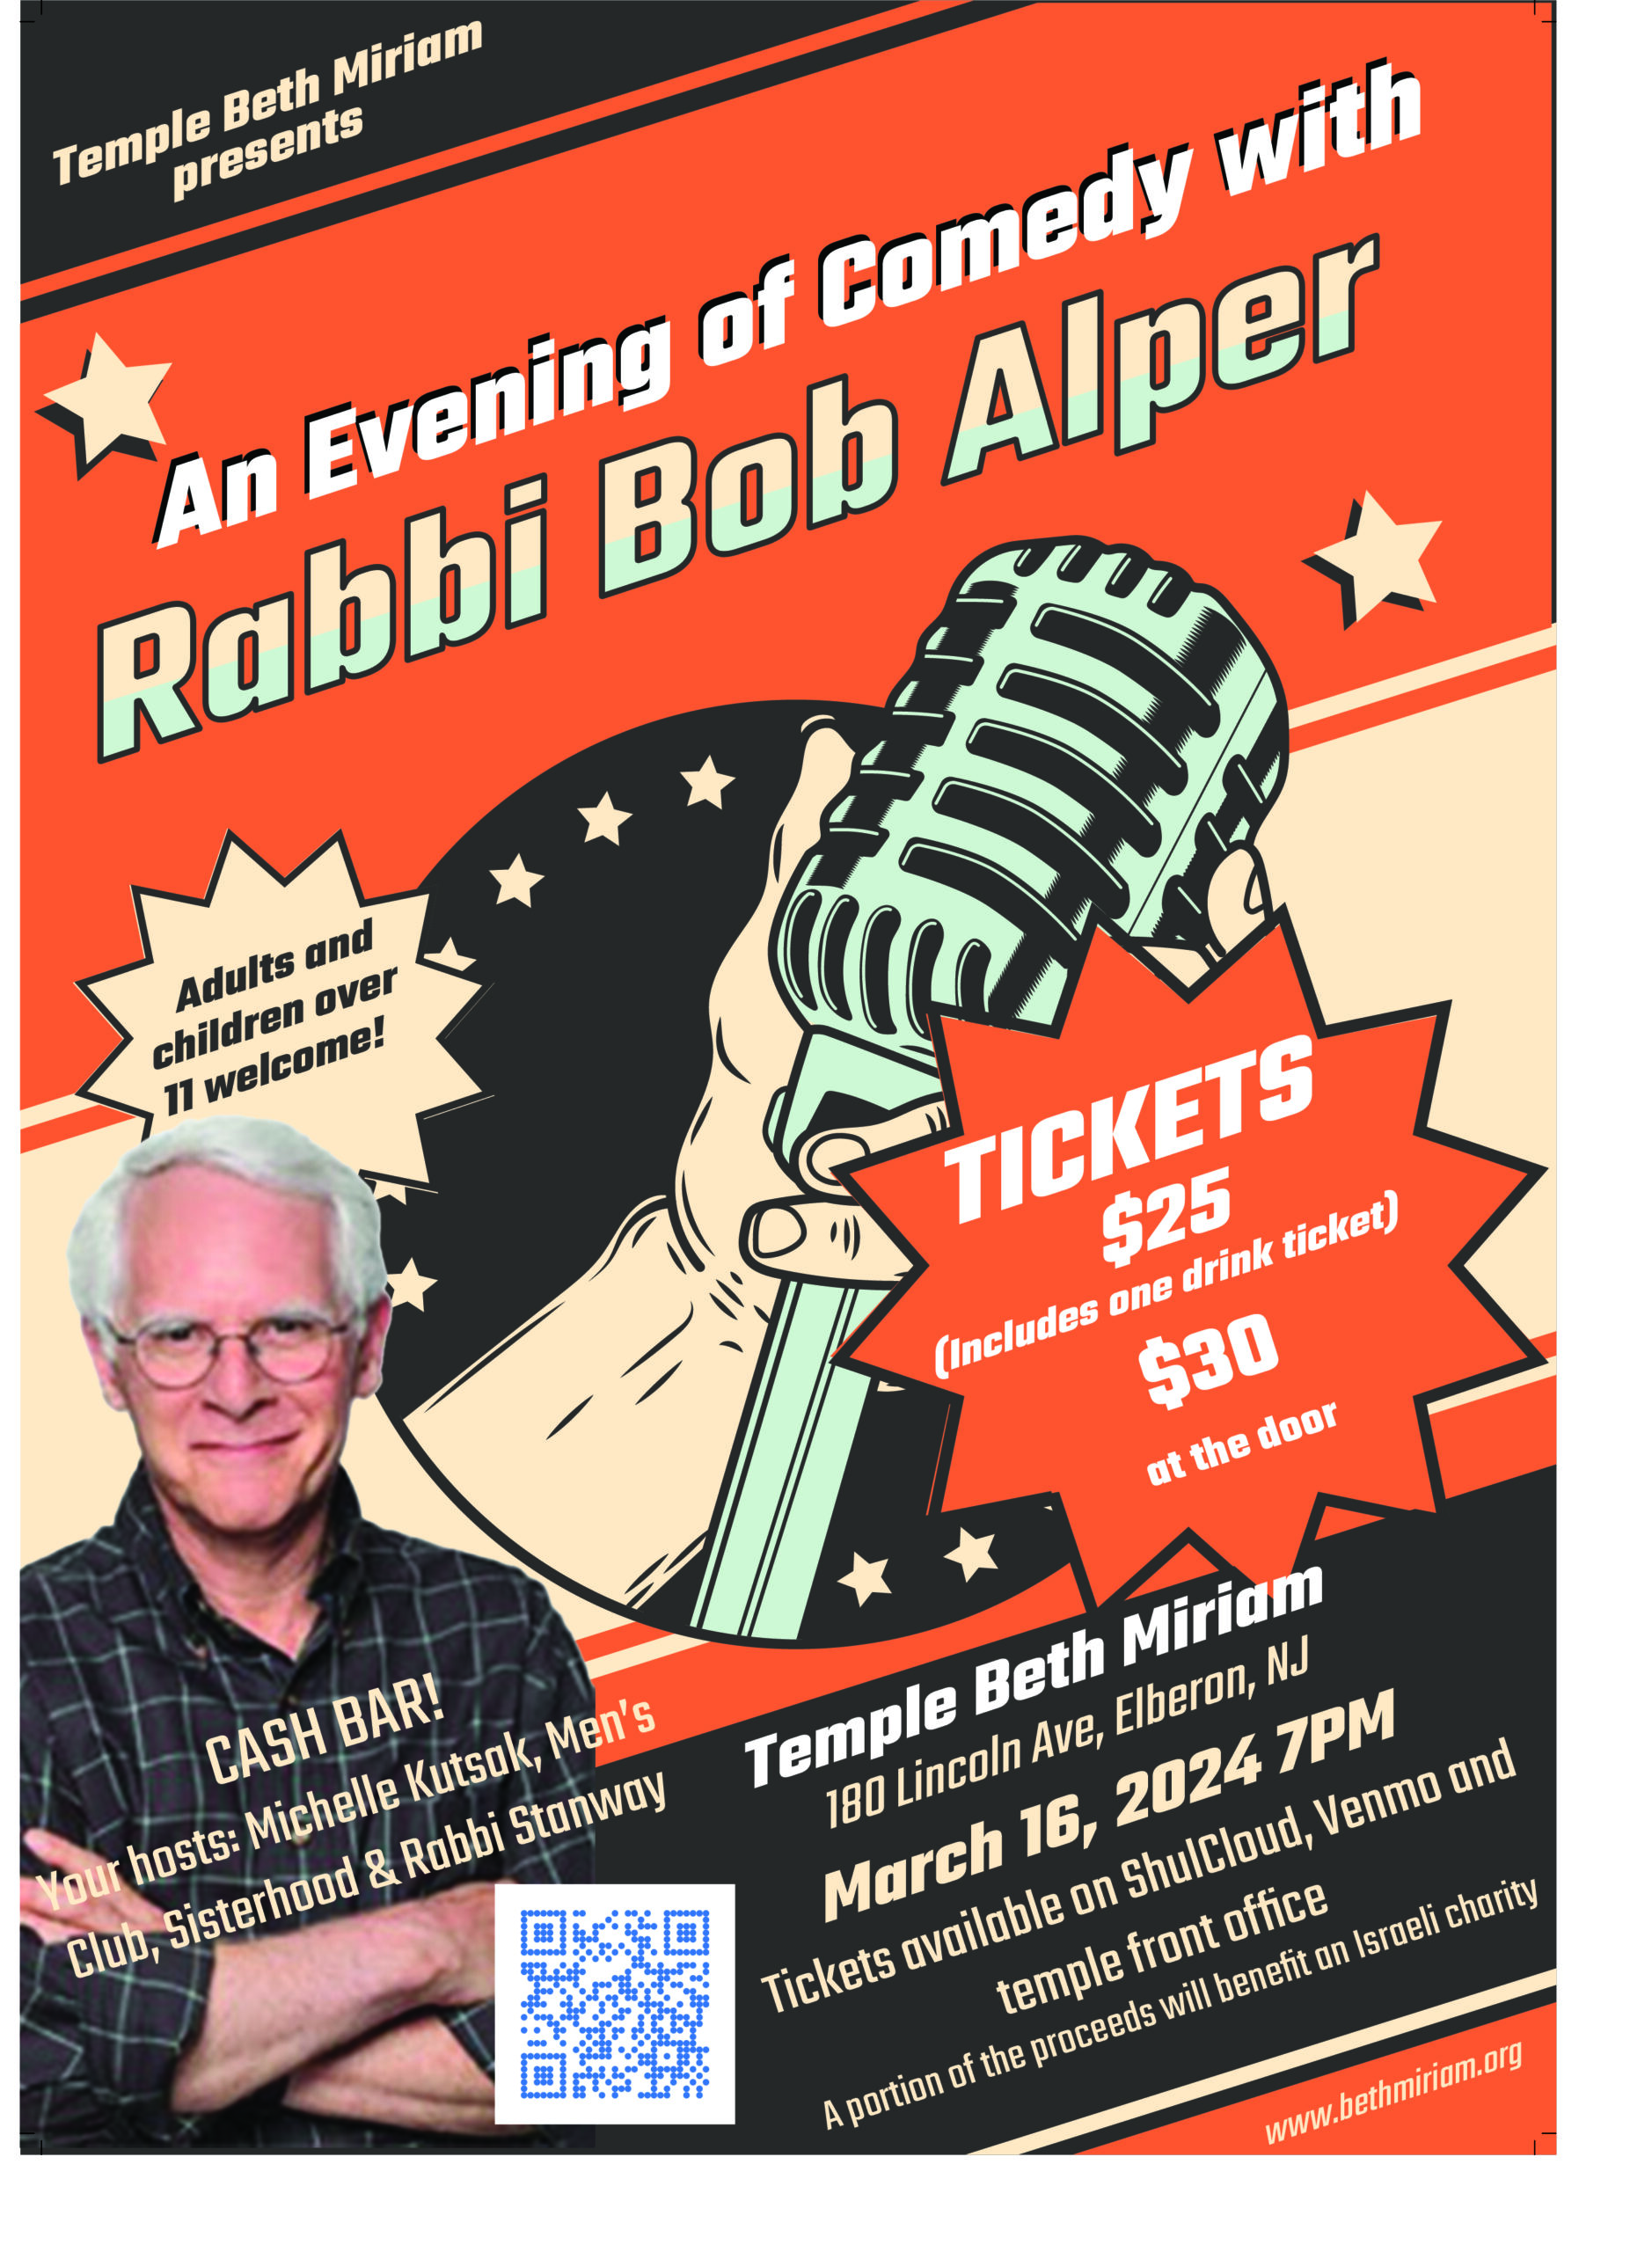 bob alper event flyer